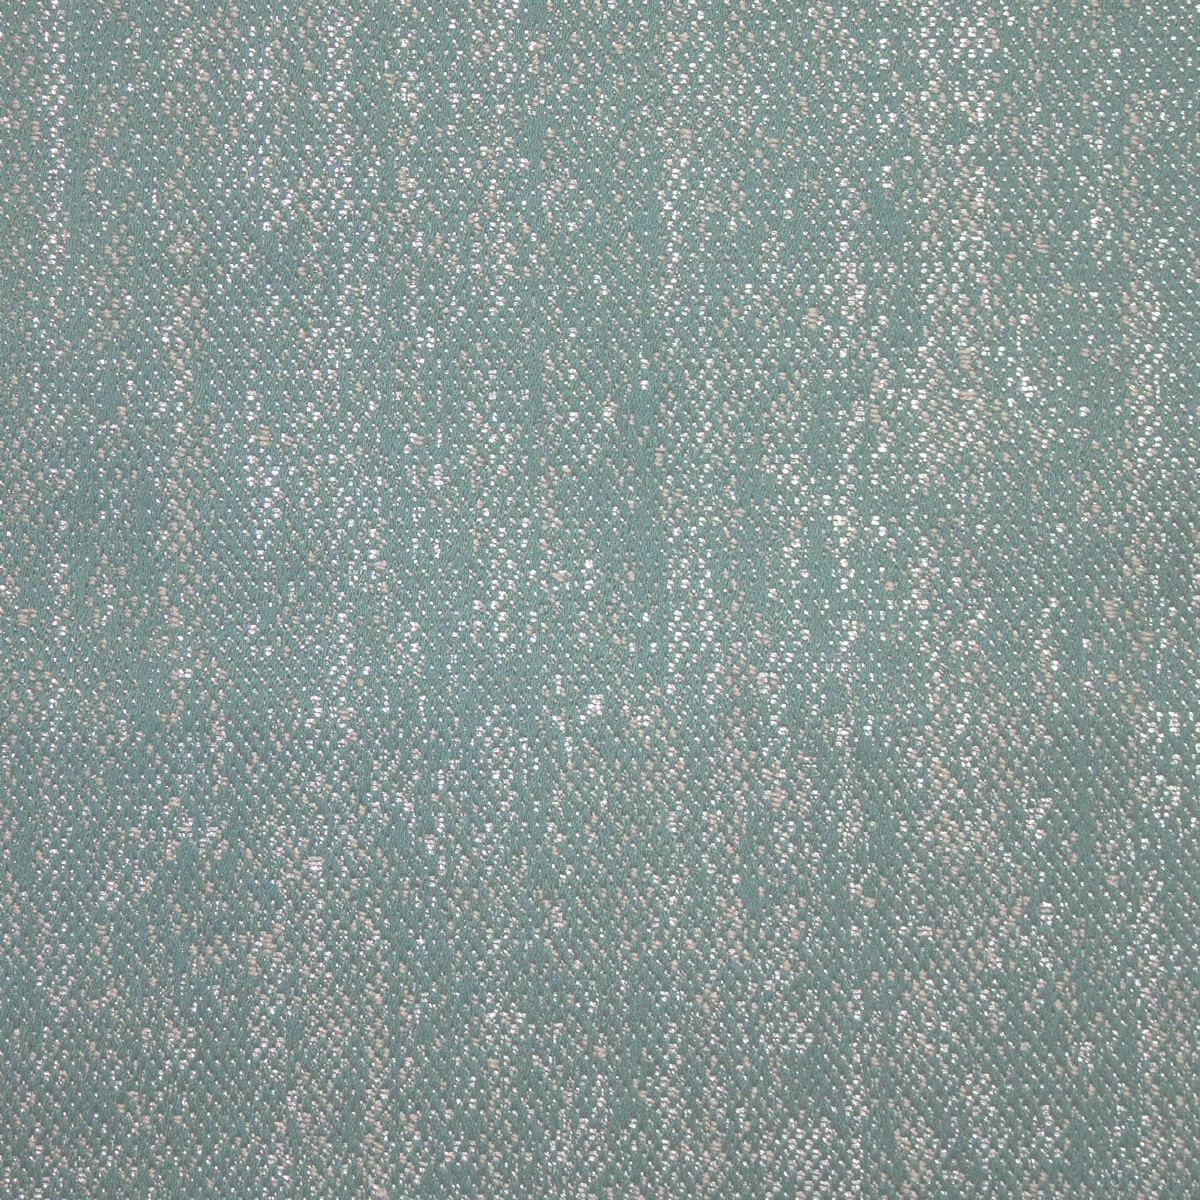 Marsa Spa Fabric by Ashley Wilde